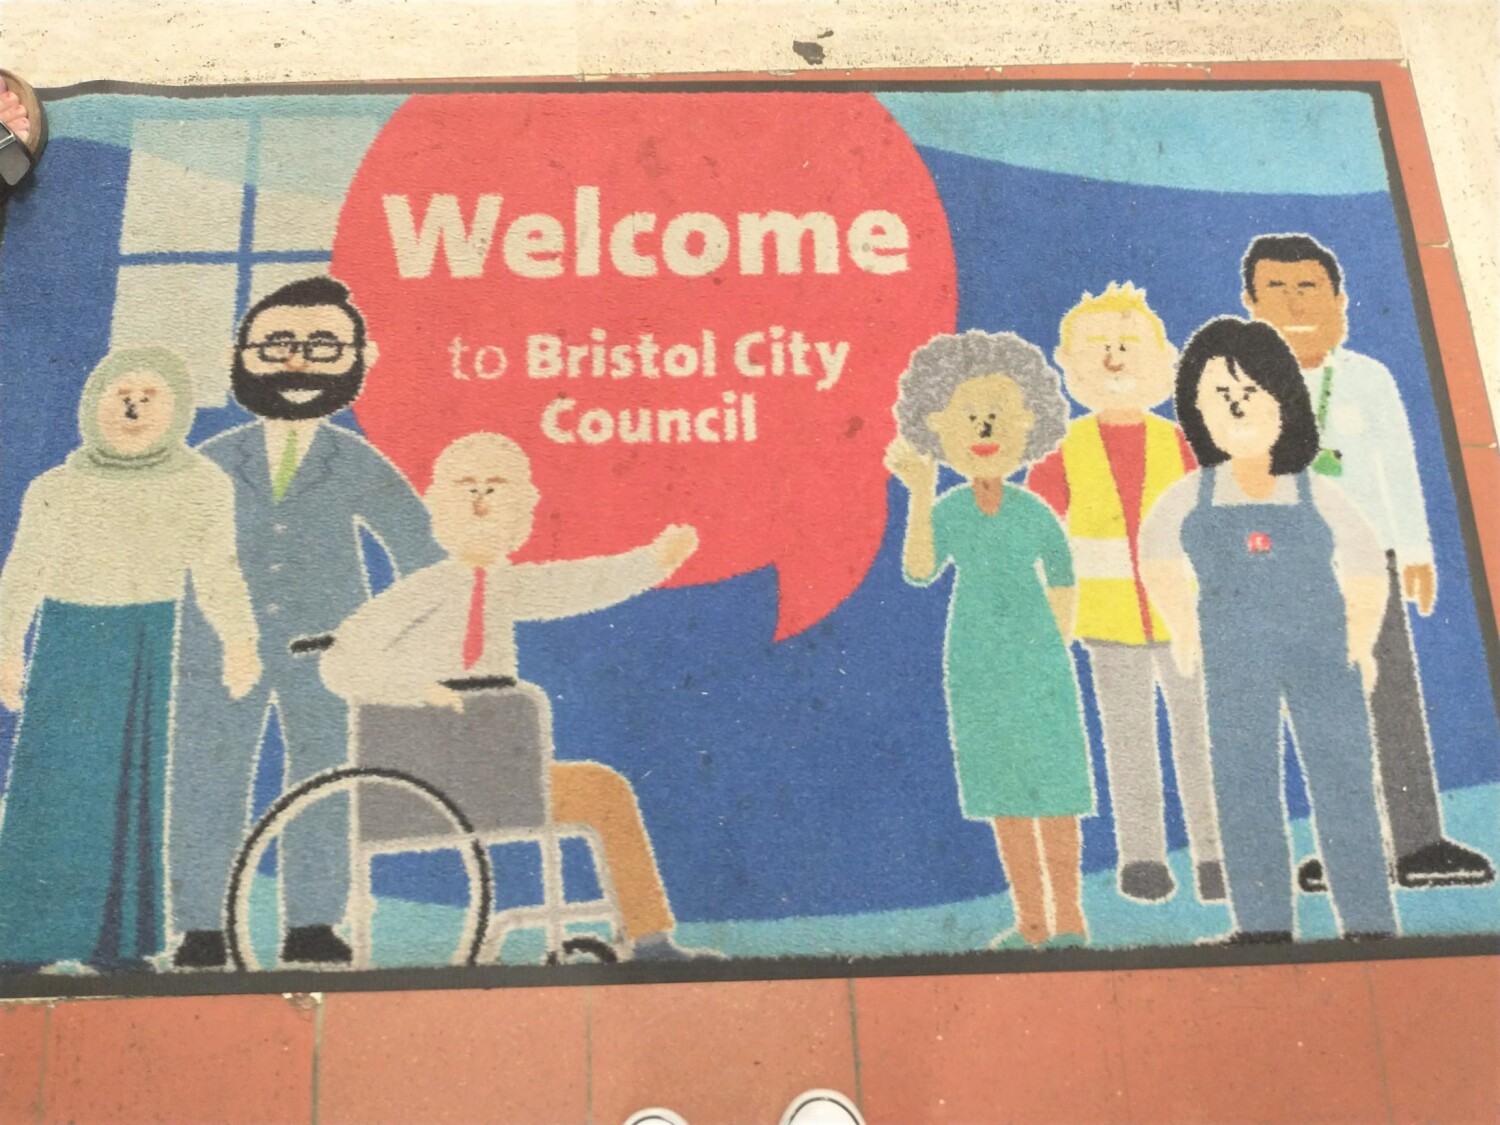 Eine Fußmatte zeigt den Text "Welcome to Bristol City Council"